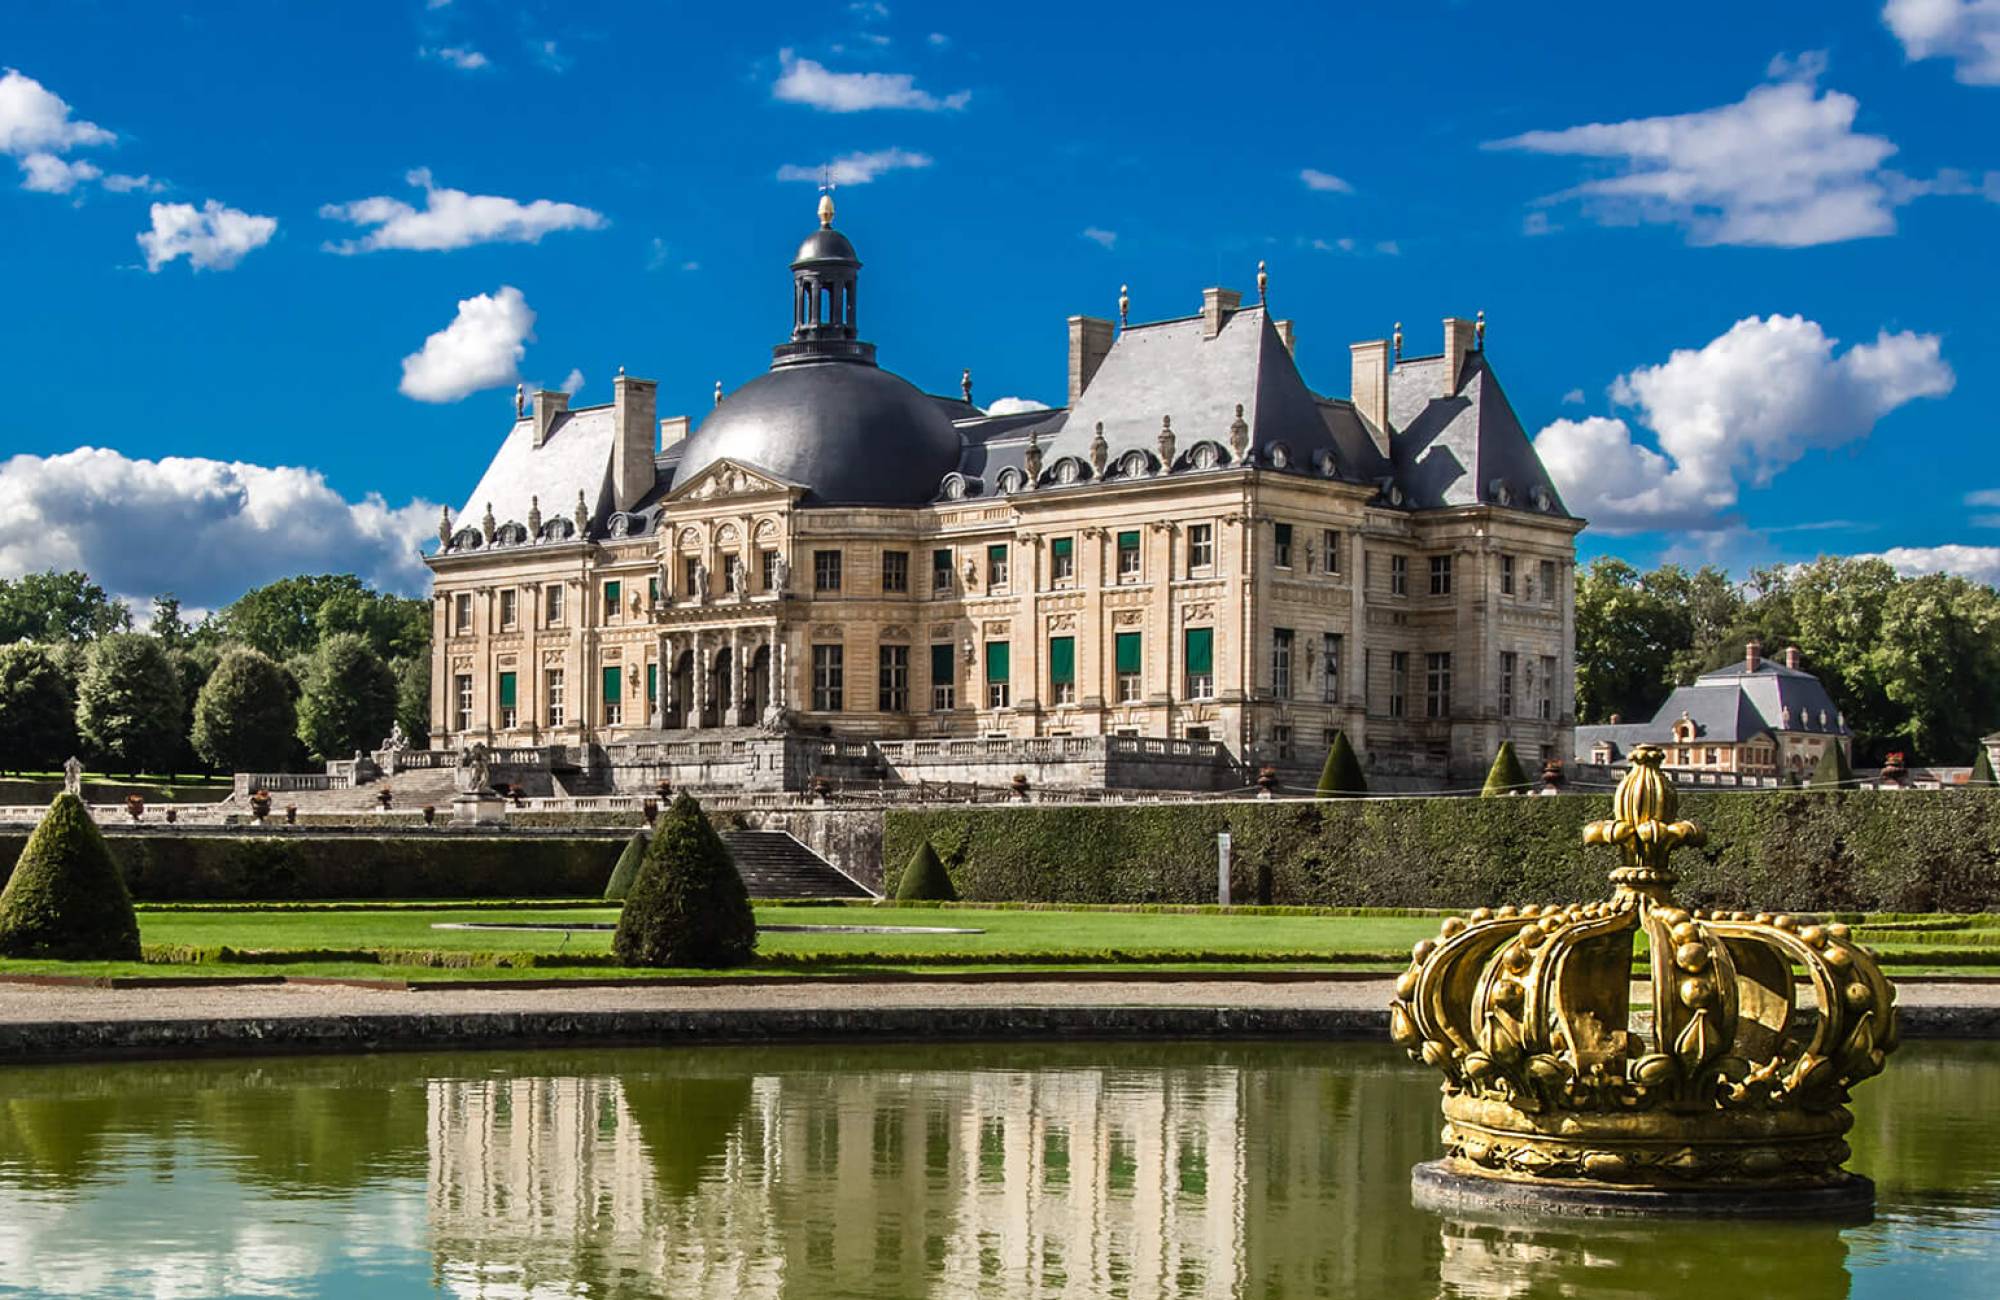 Vaux-le-Vicomte, Gardens, Architecture, Baroque